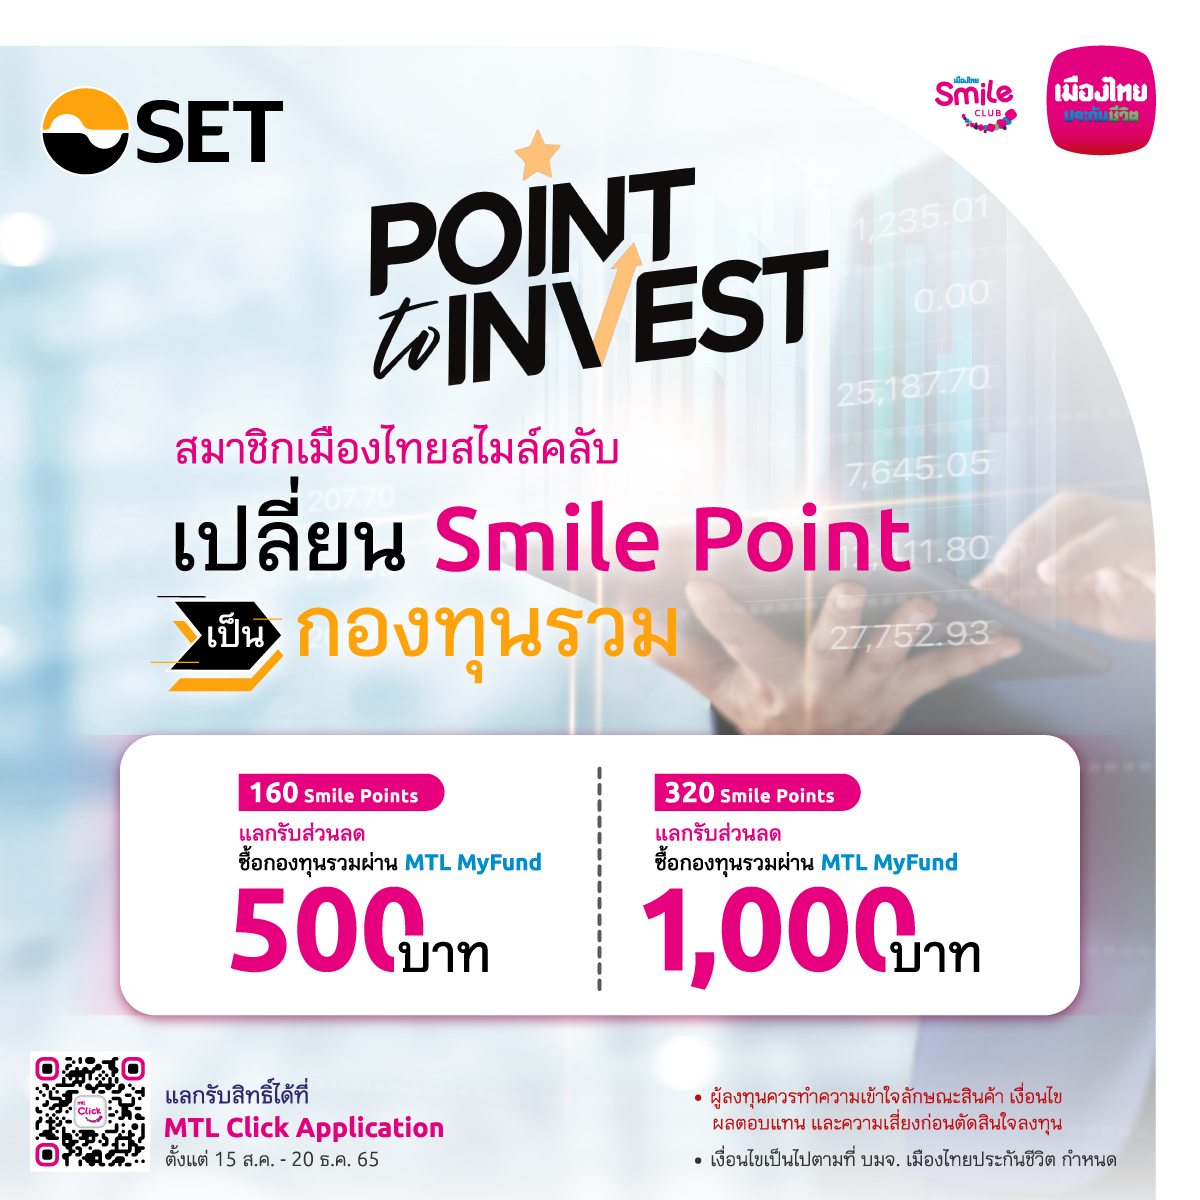 เมืองไทยประกันชีวิต จับมือตลาดหลักทรัพย์แห่งประเทศไทย เปิดตัวโครงการ Smile Point to Invest